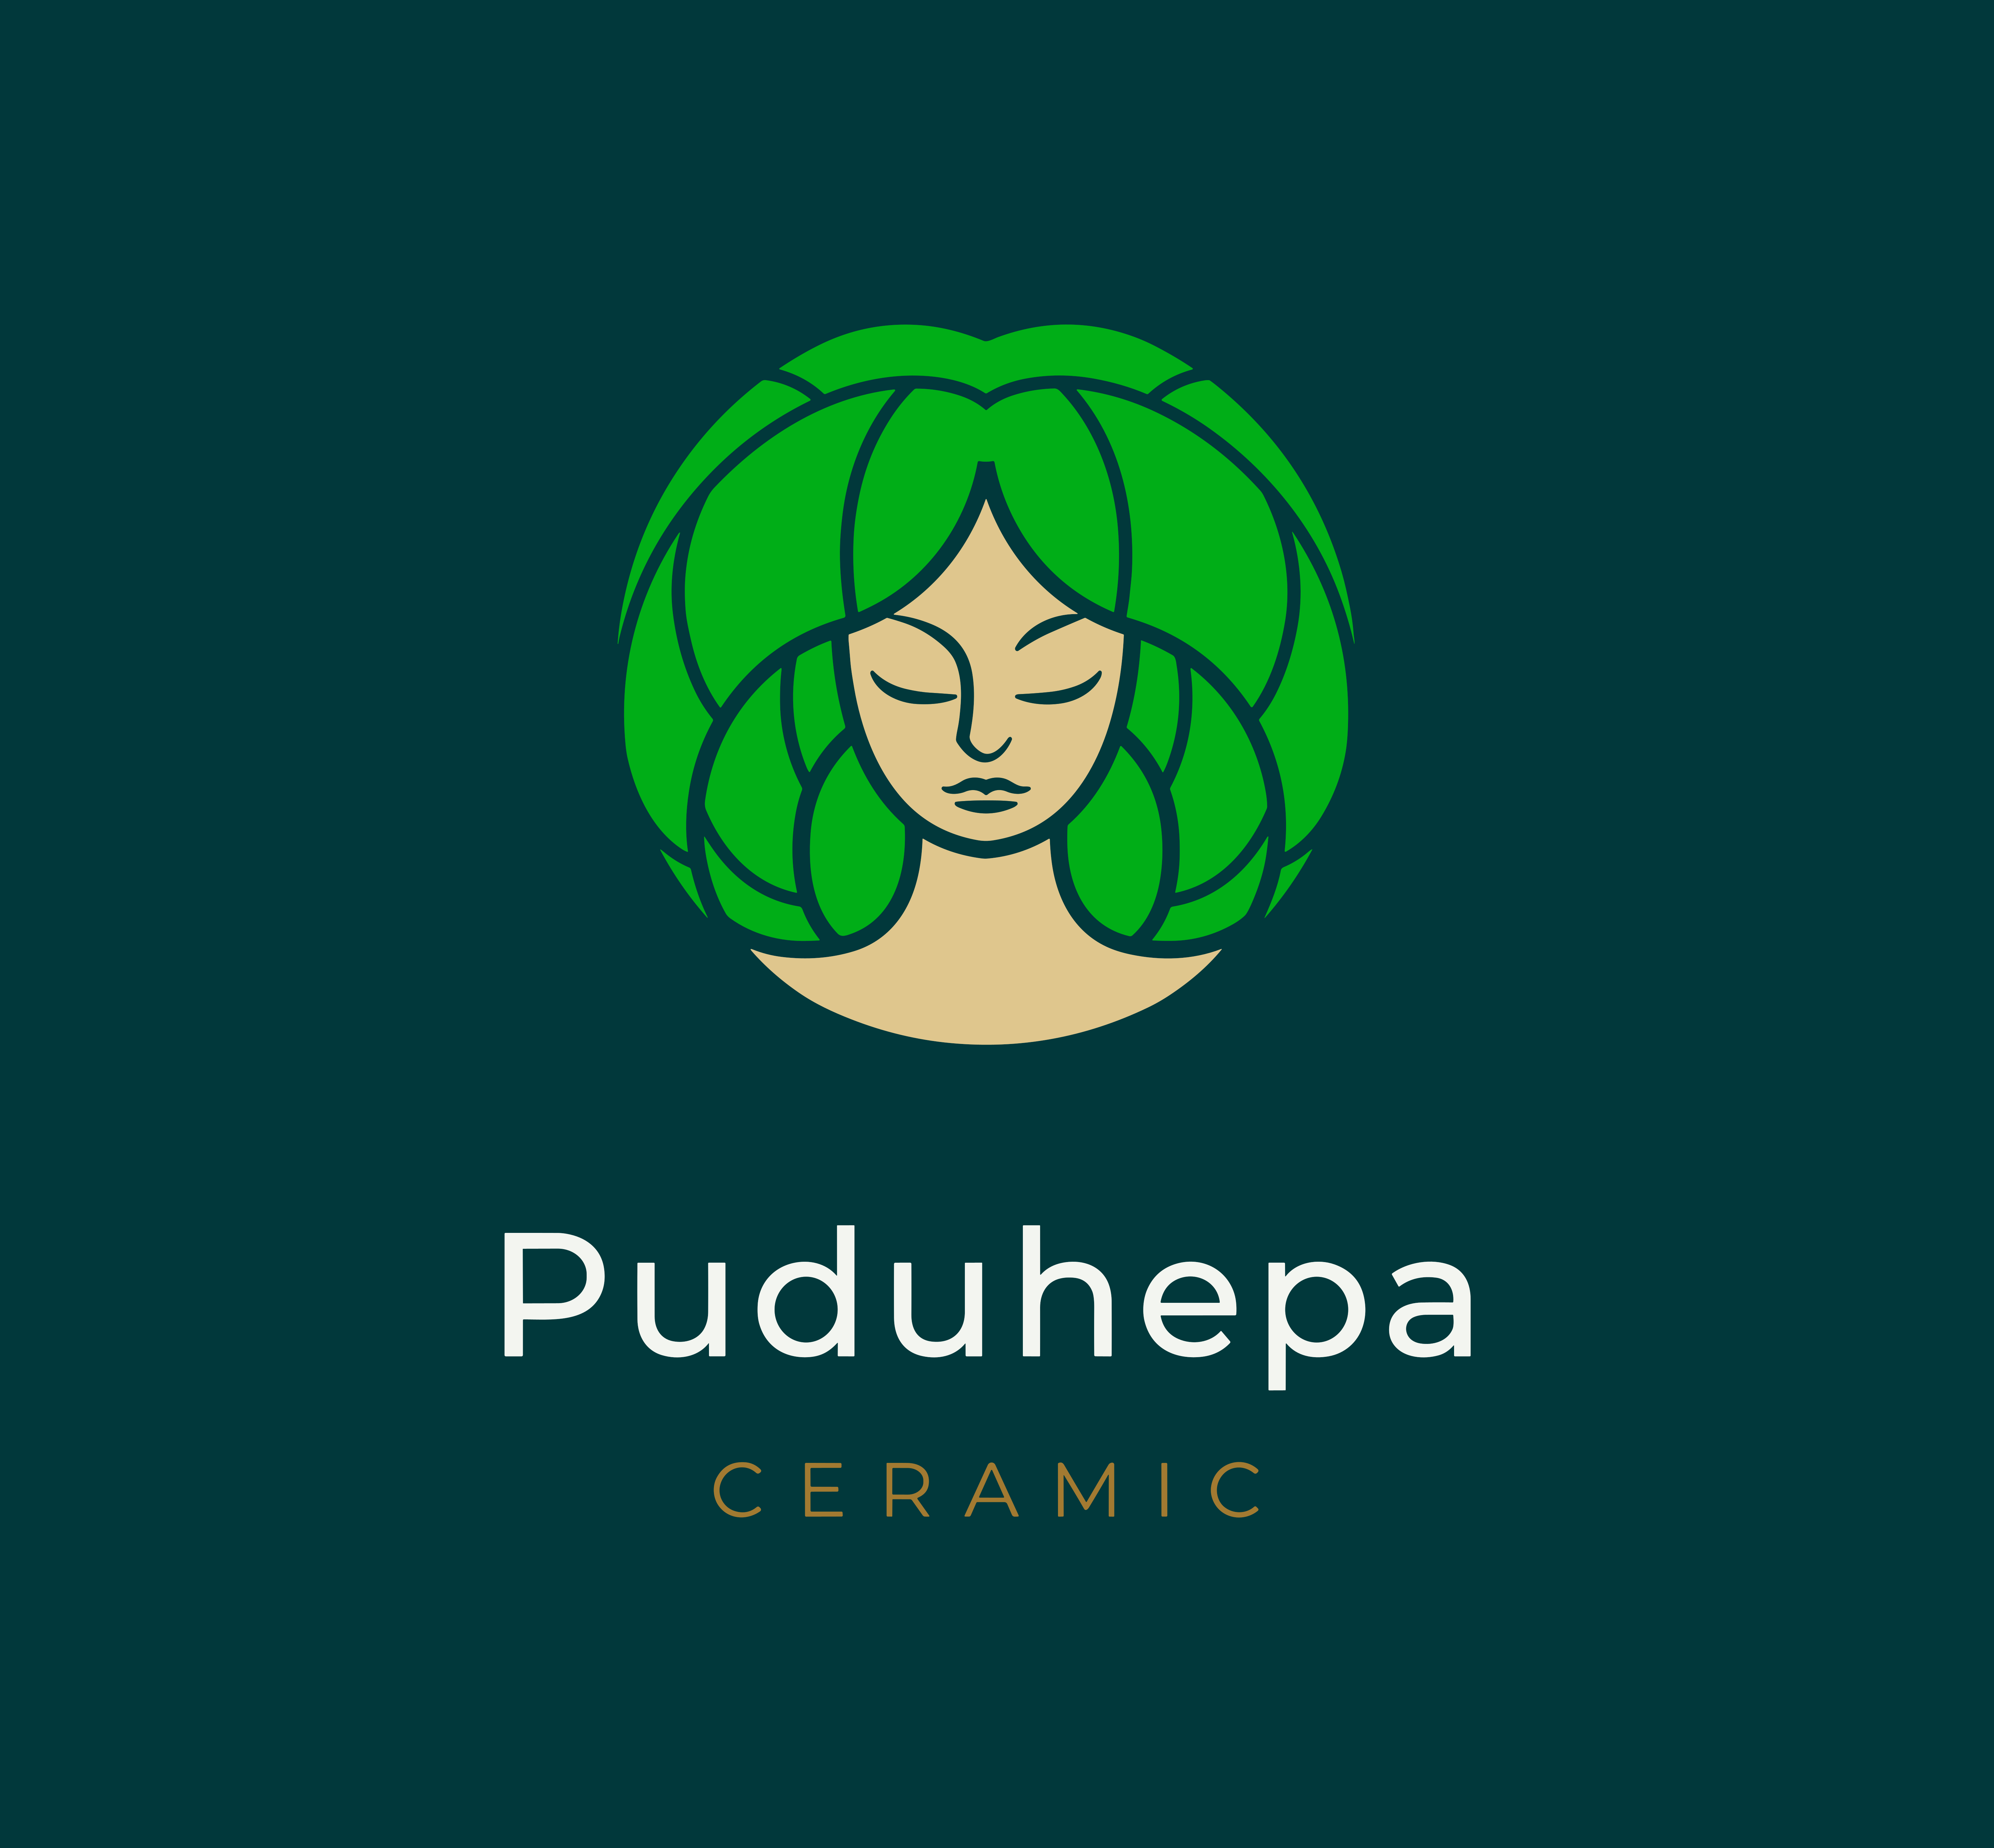 Puduhepa Ceramic